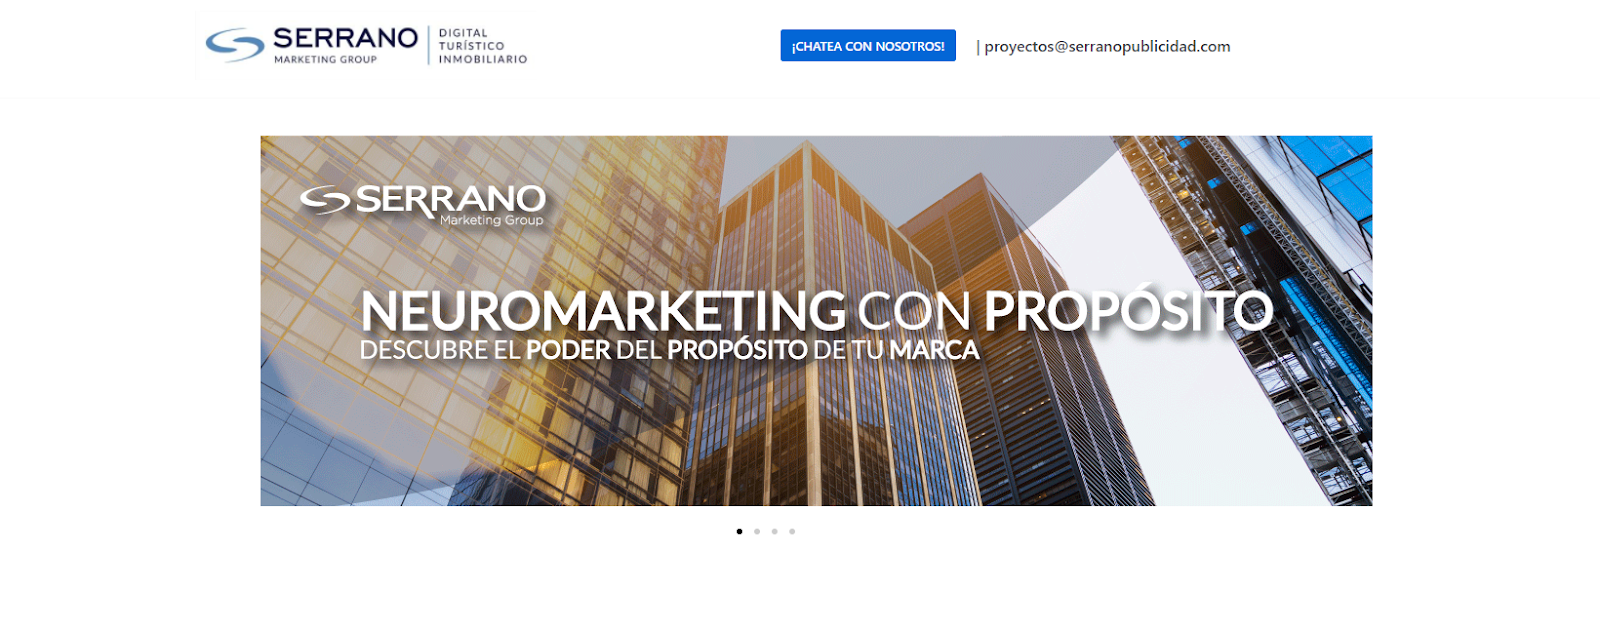 Serrano Marketing Group